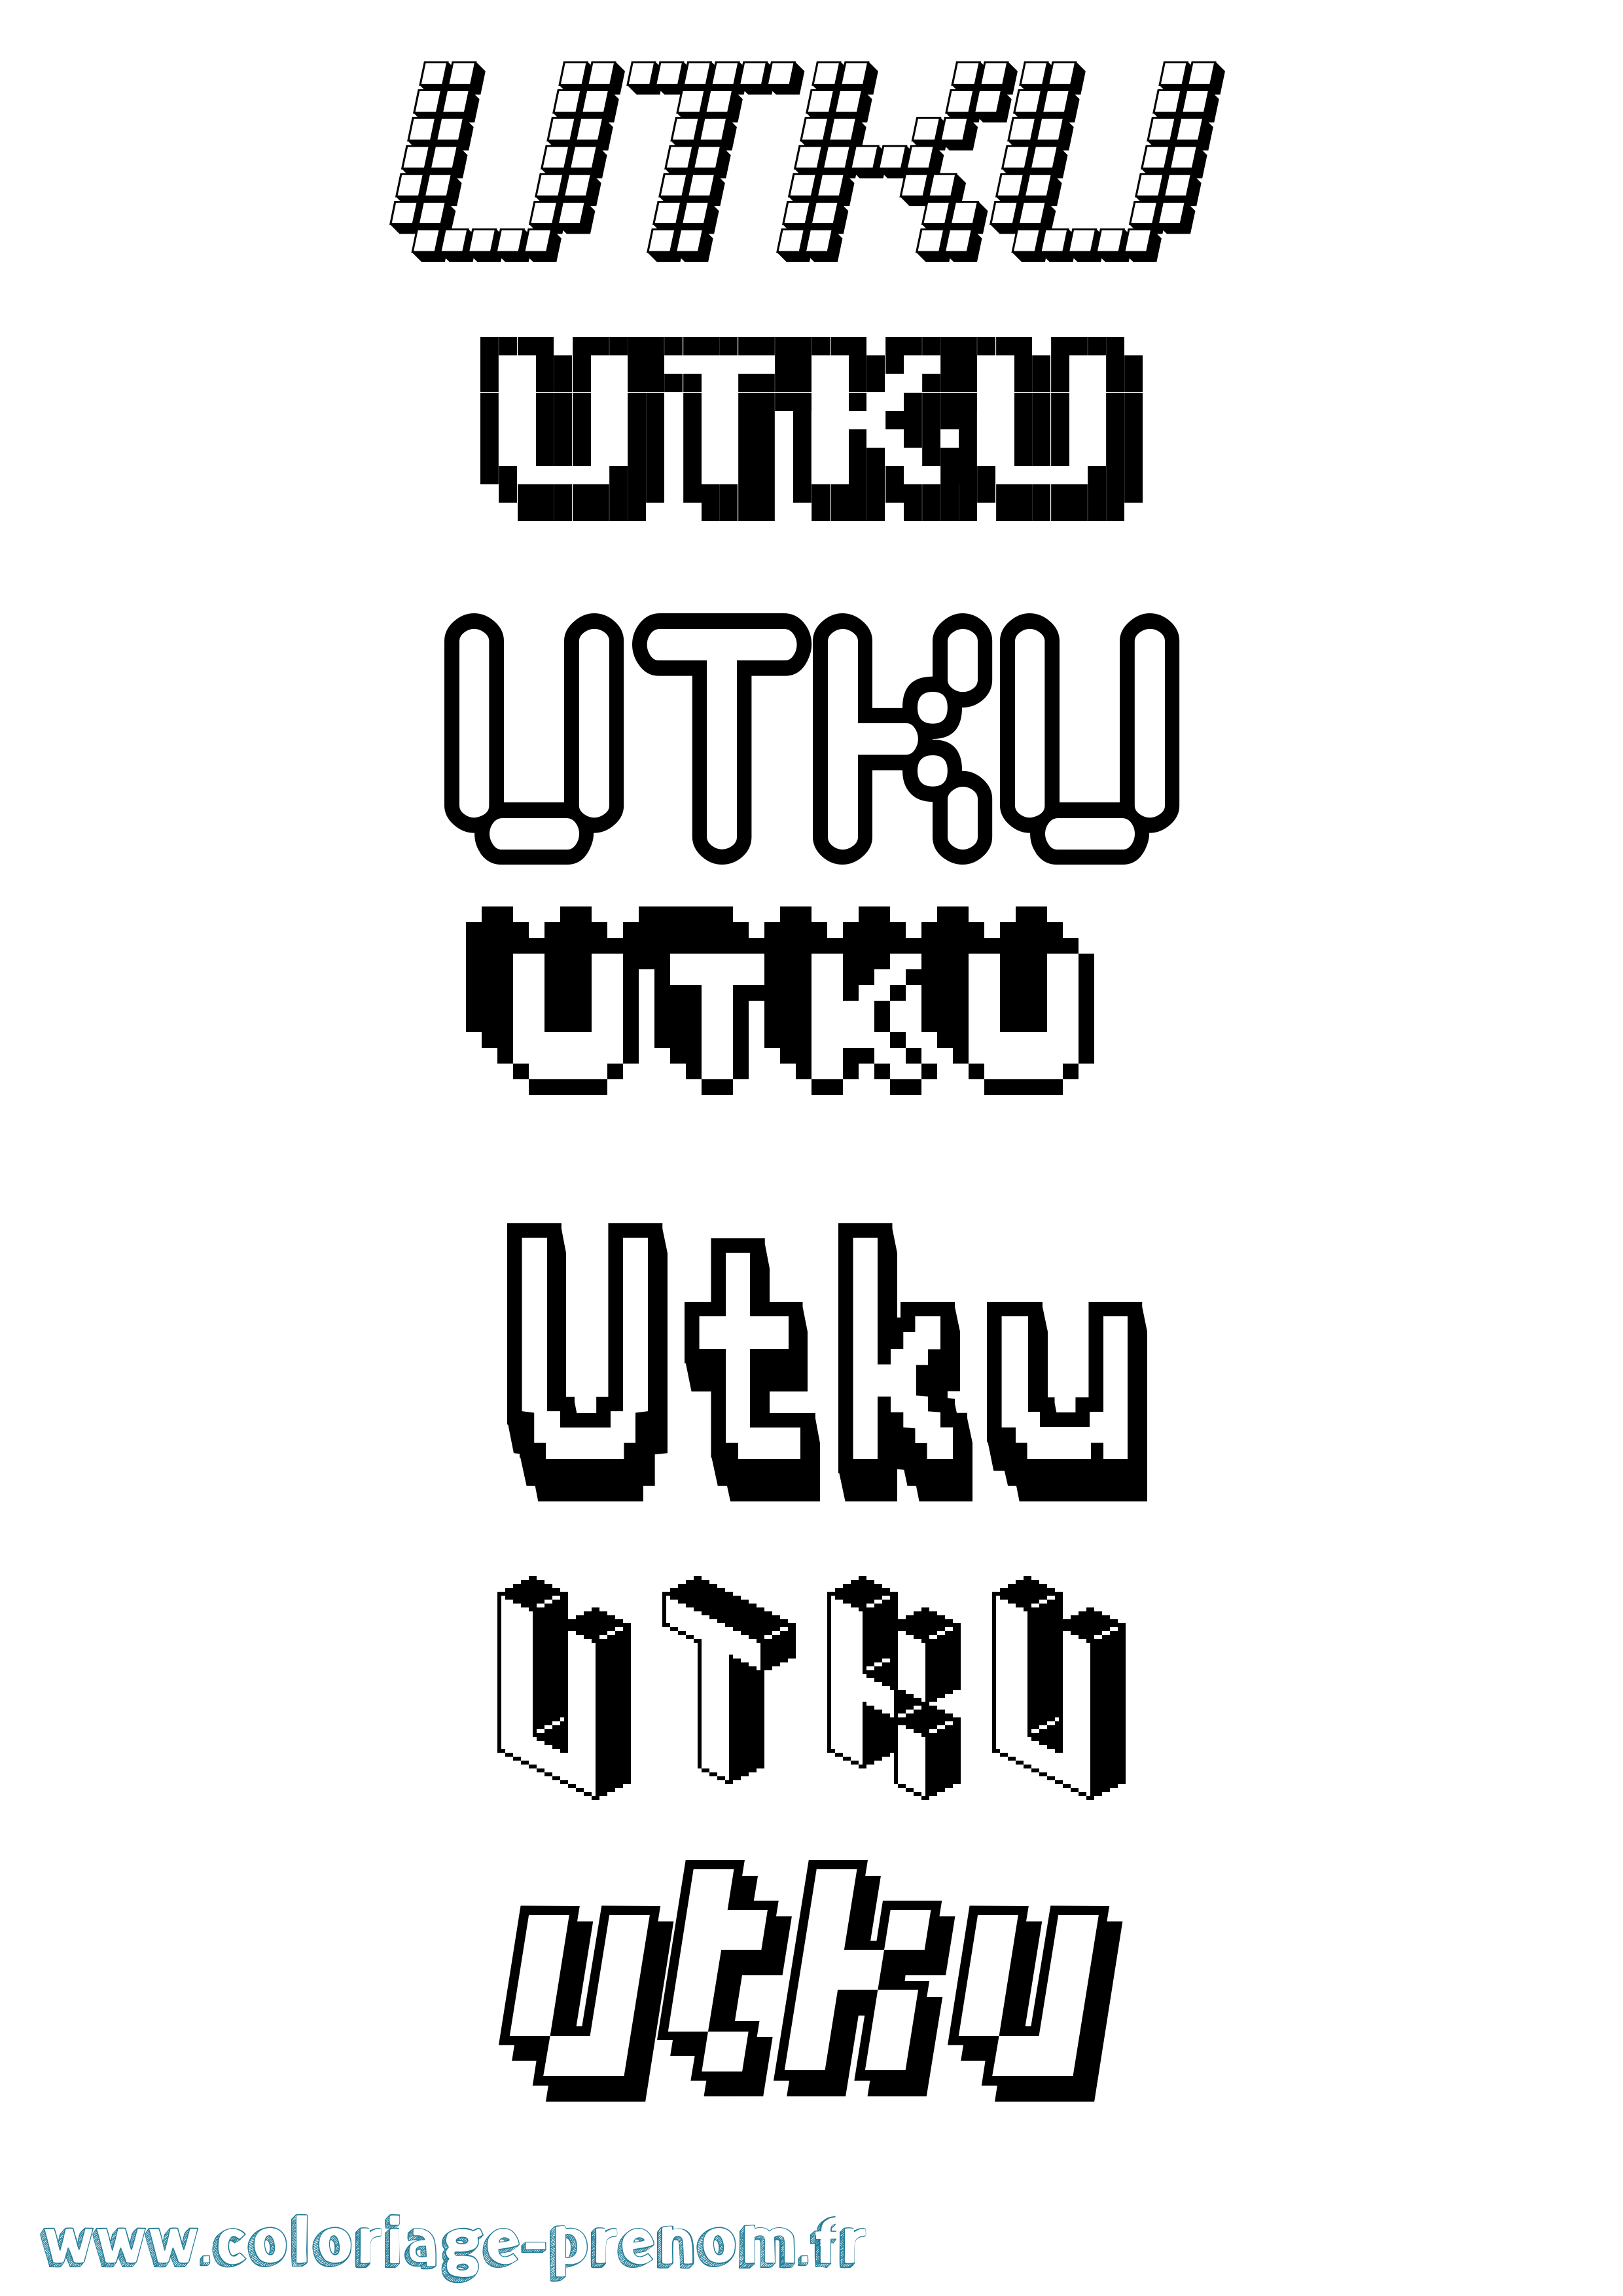 Coloriage prénom Utku Pixel